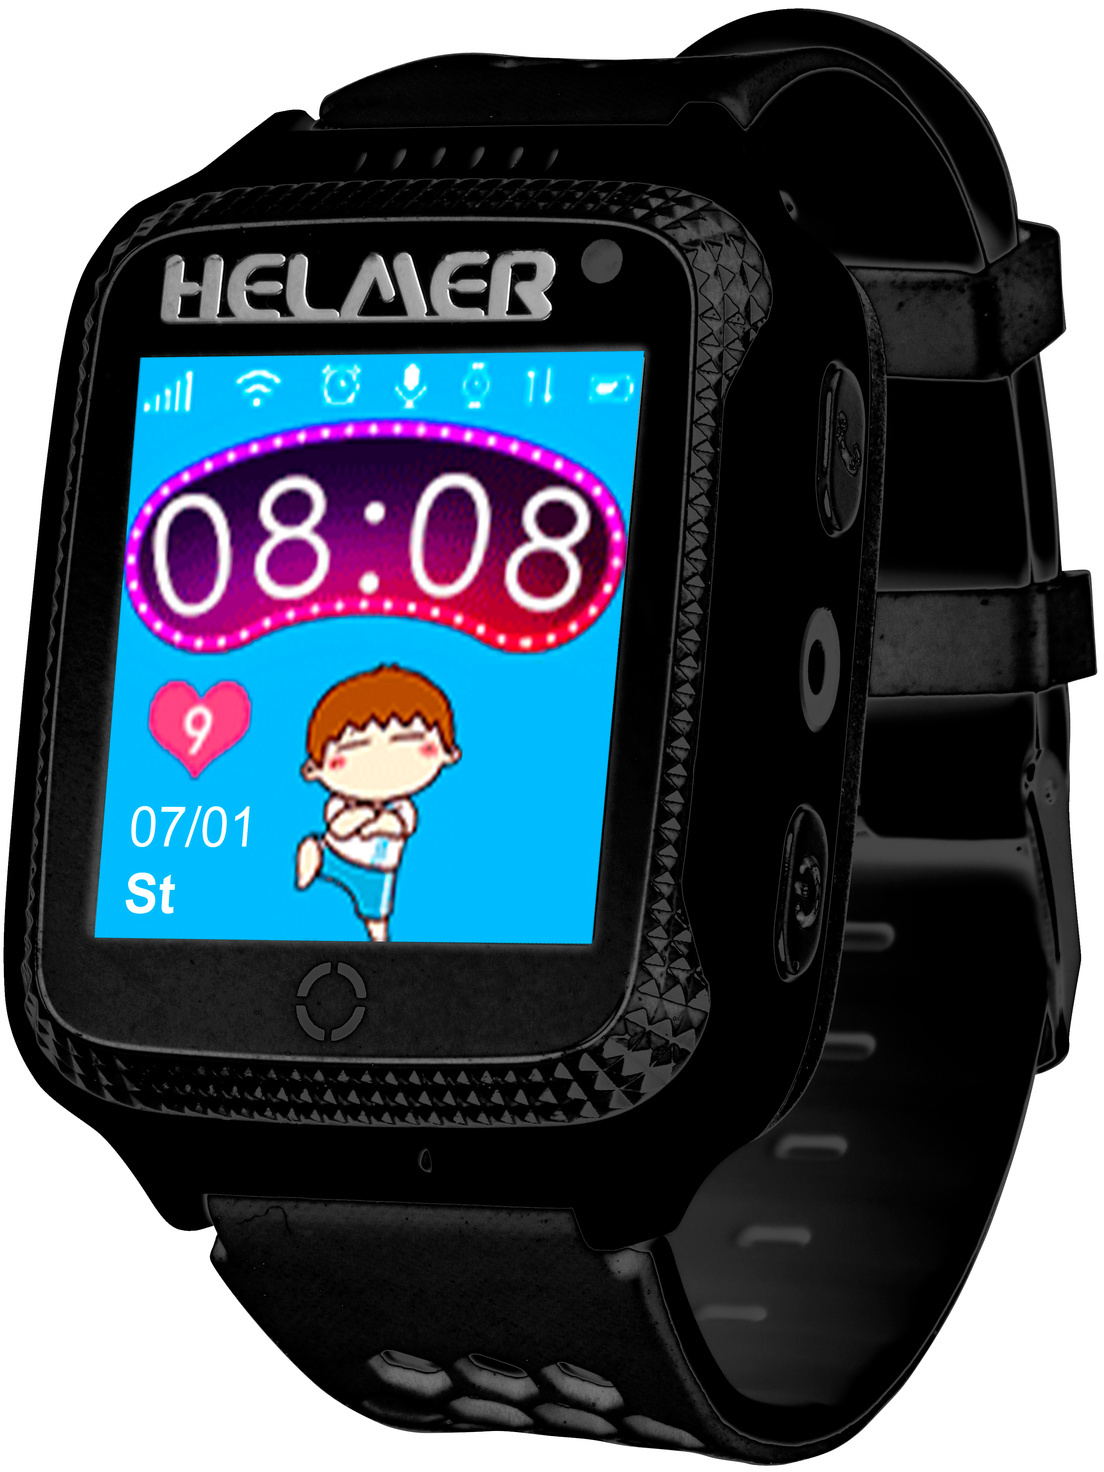 Zobrazit detail výrobku Helmer Chytré dotykové hodinky s GPS lokátorem a fotoaparátem - LK 707 černé